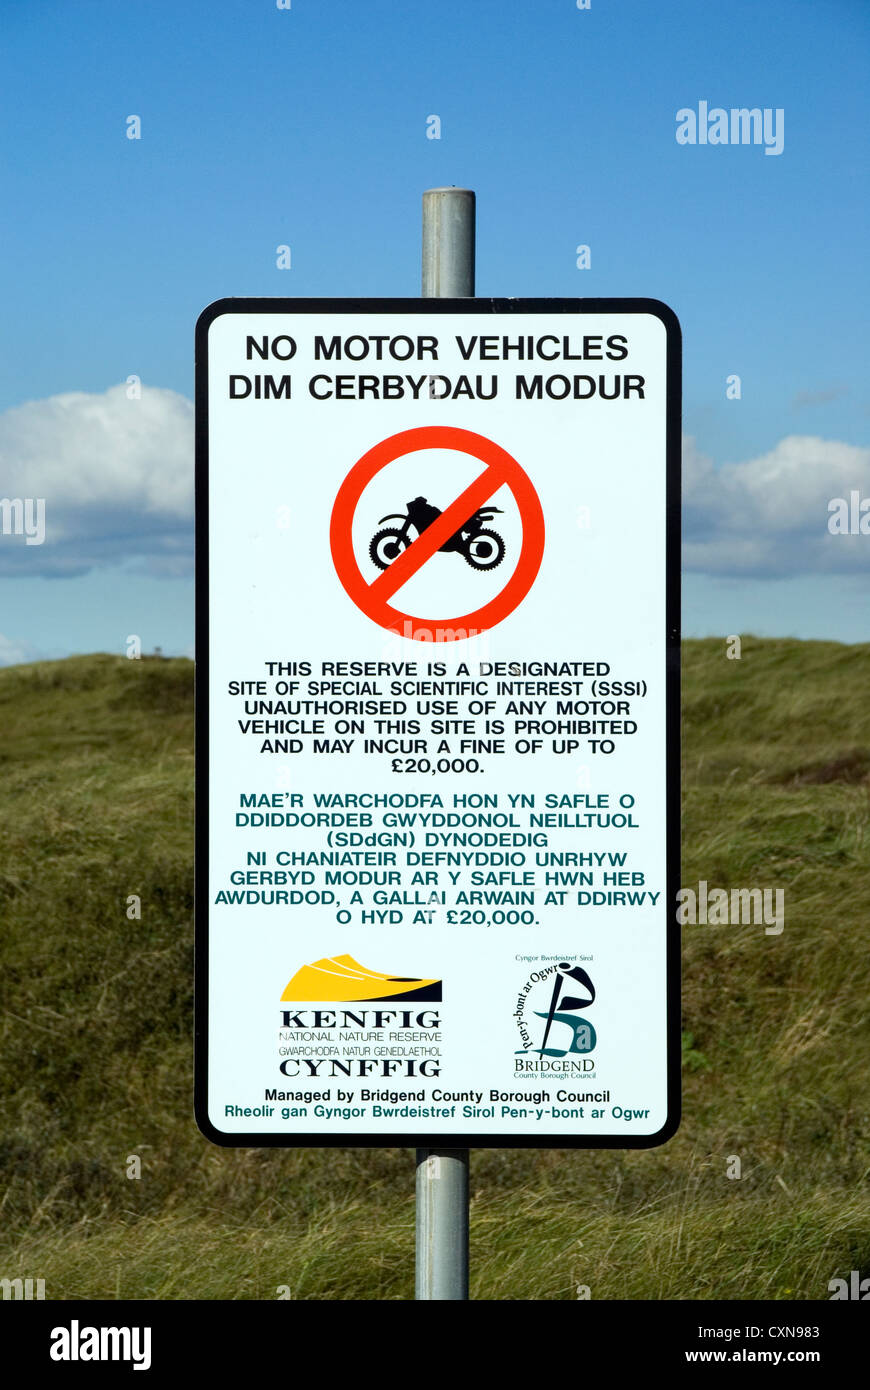 Melden Sie keine Motorfahrzeuge Qualitätsorientierung nationale Naturreservat in der Nähe von Porthcawl Wales uk Stockfoto